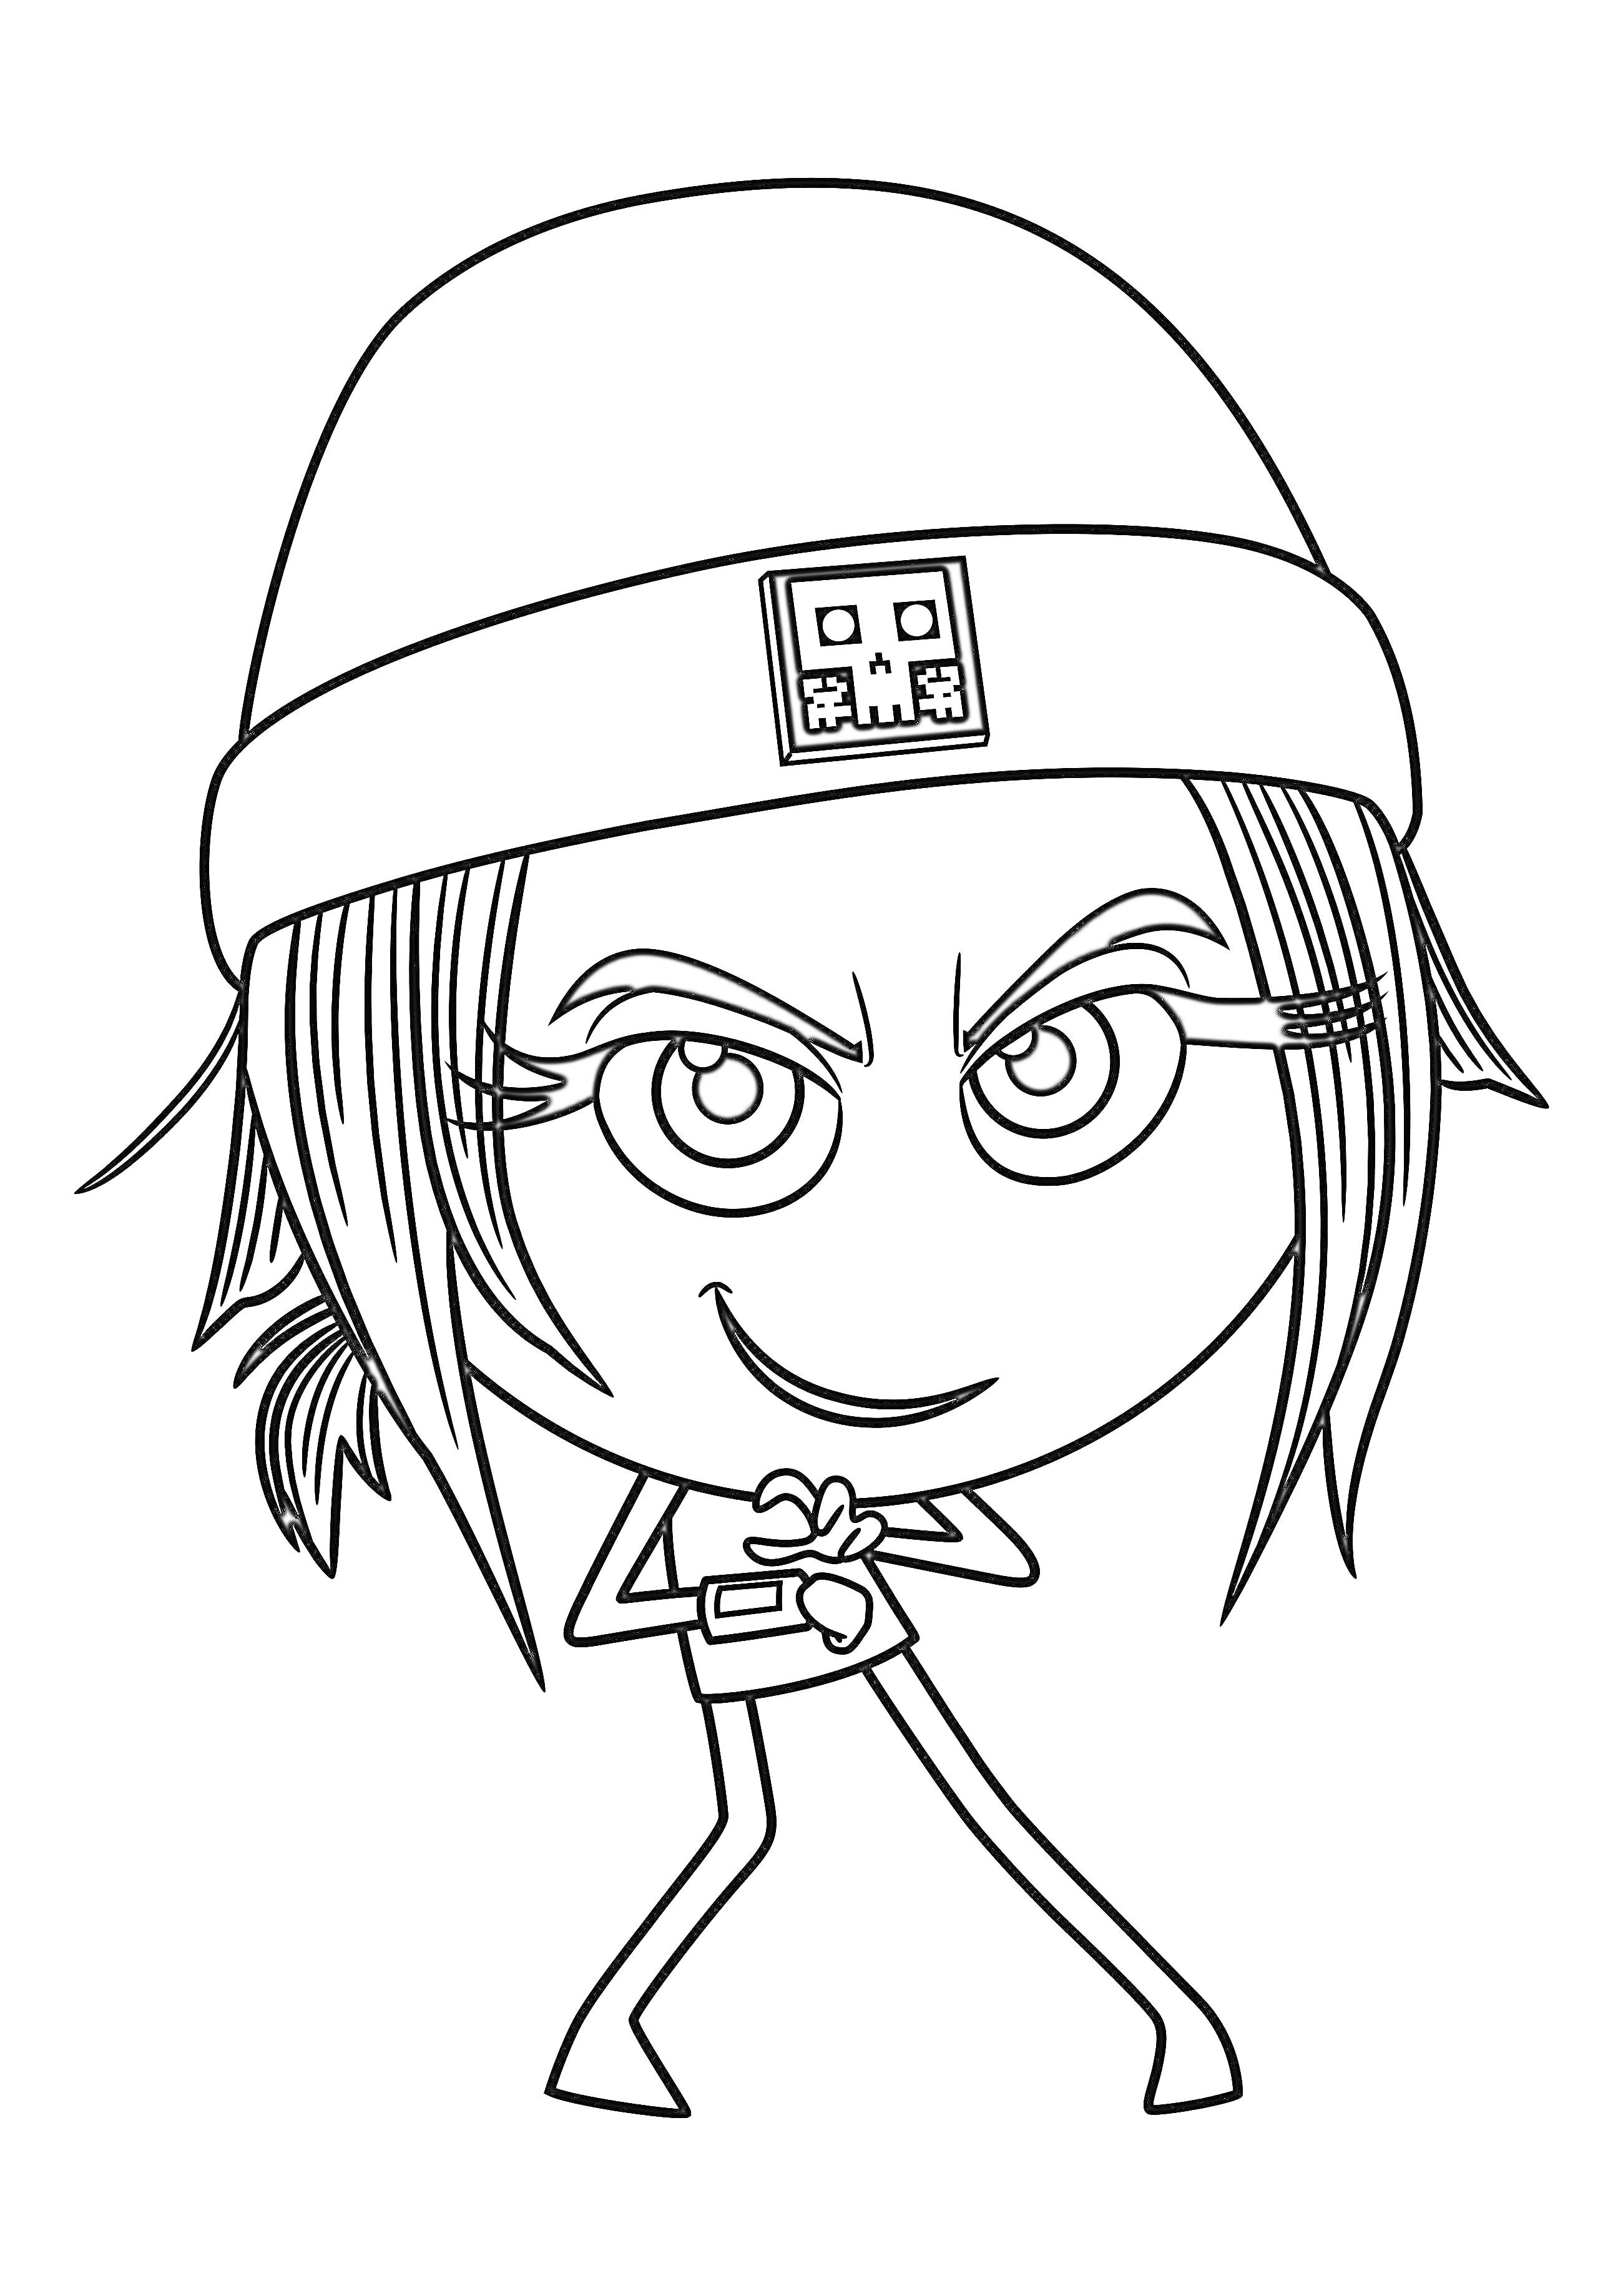 Раскраска Эмодзи персонаж в шапке с наглой улыбкой, сложенными ладонями и длинными ресницами